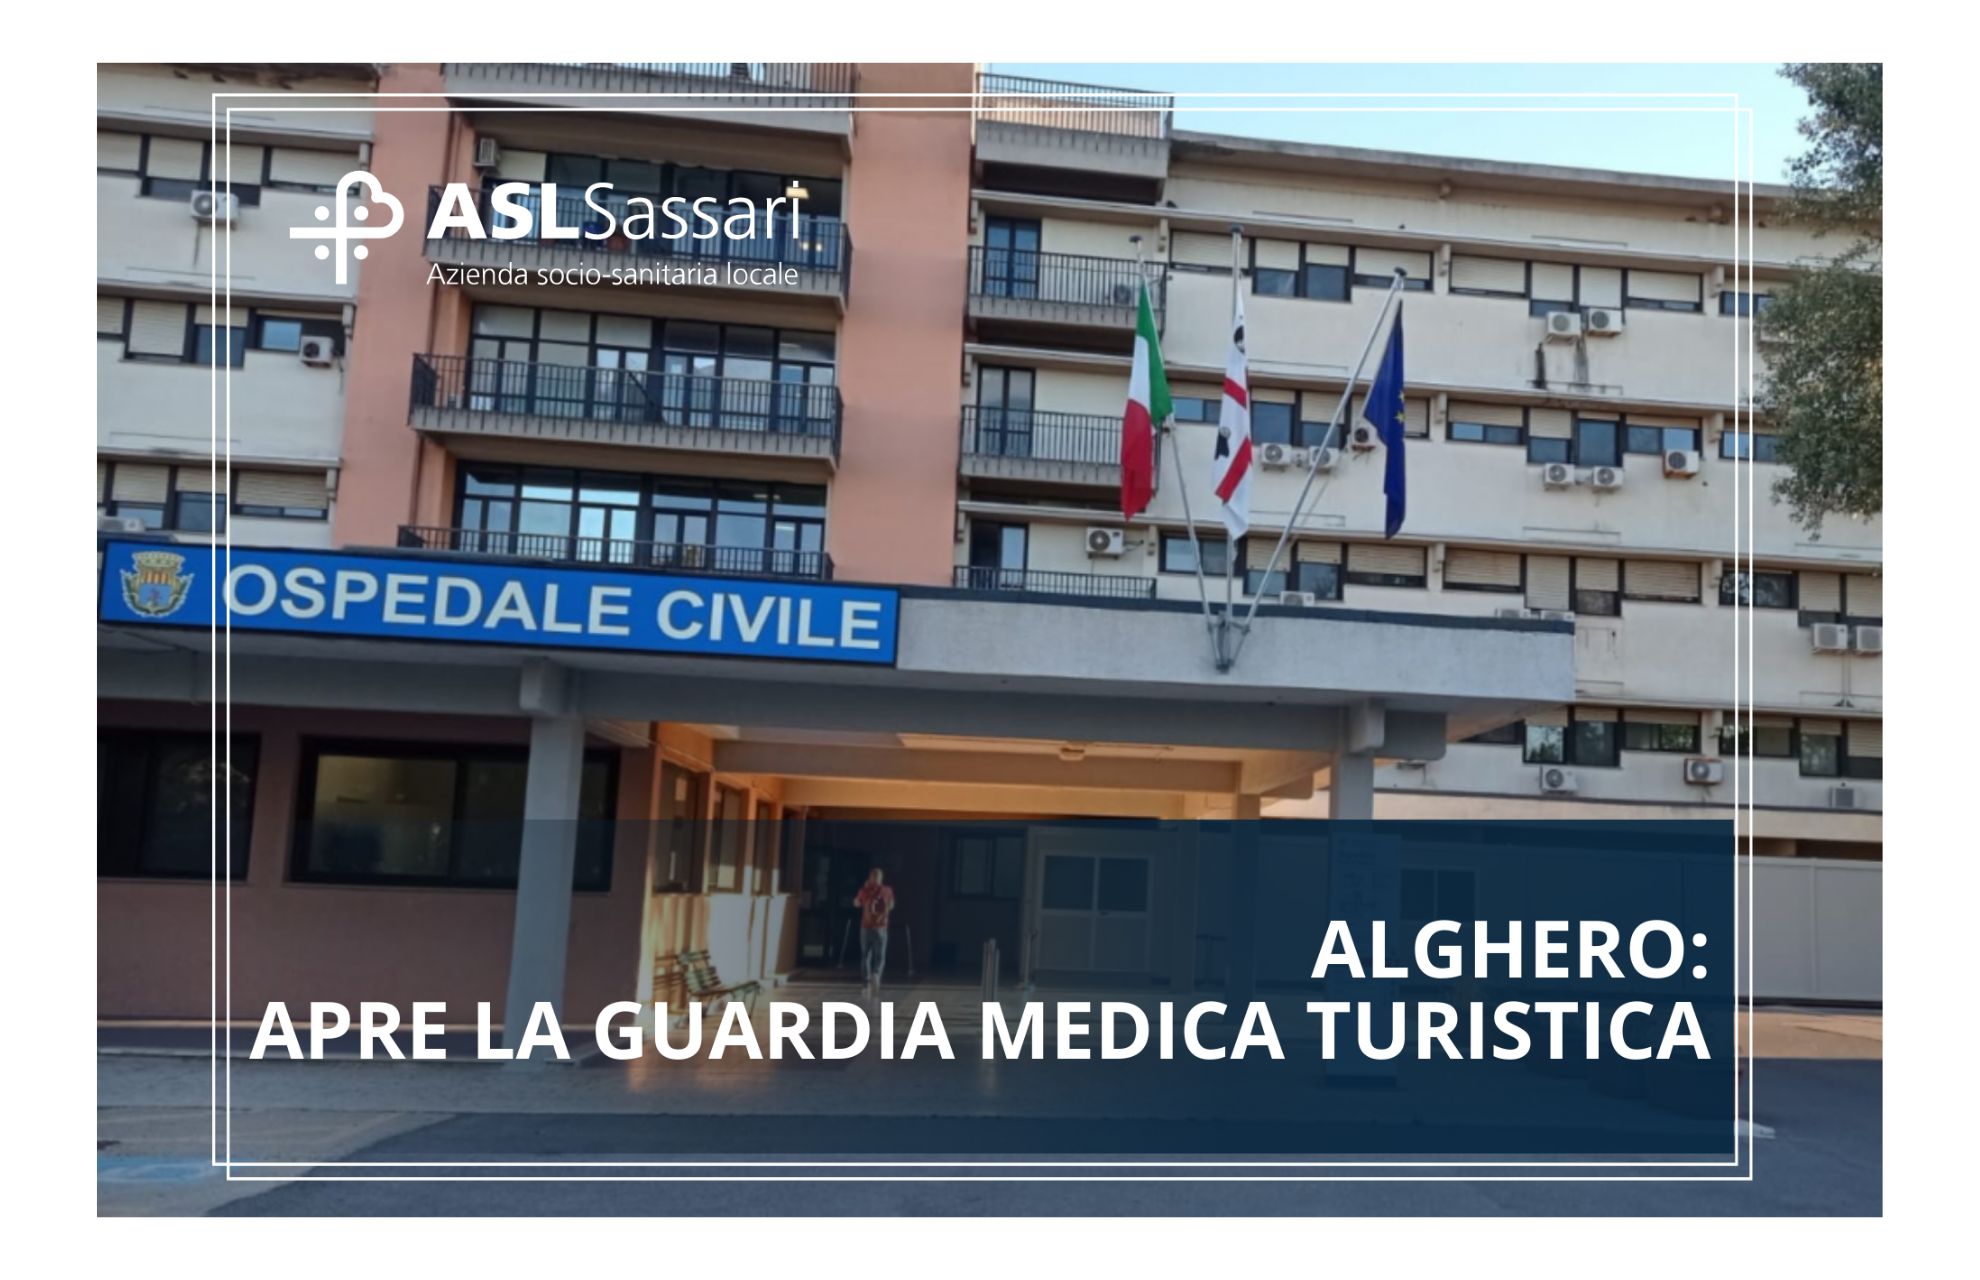 Alghero: apre la guardia medica turistica